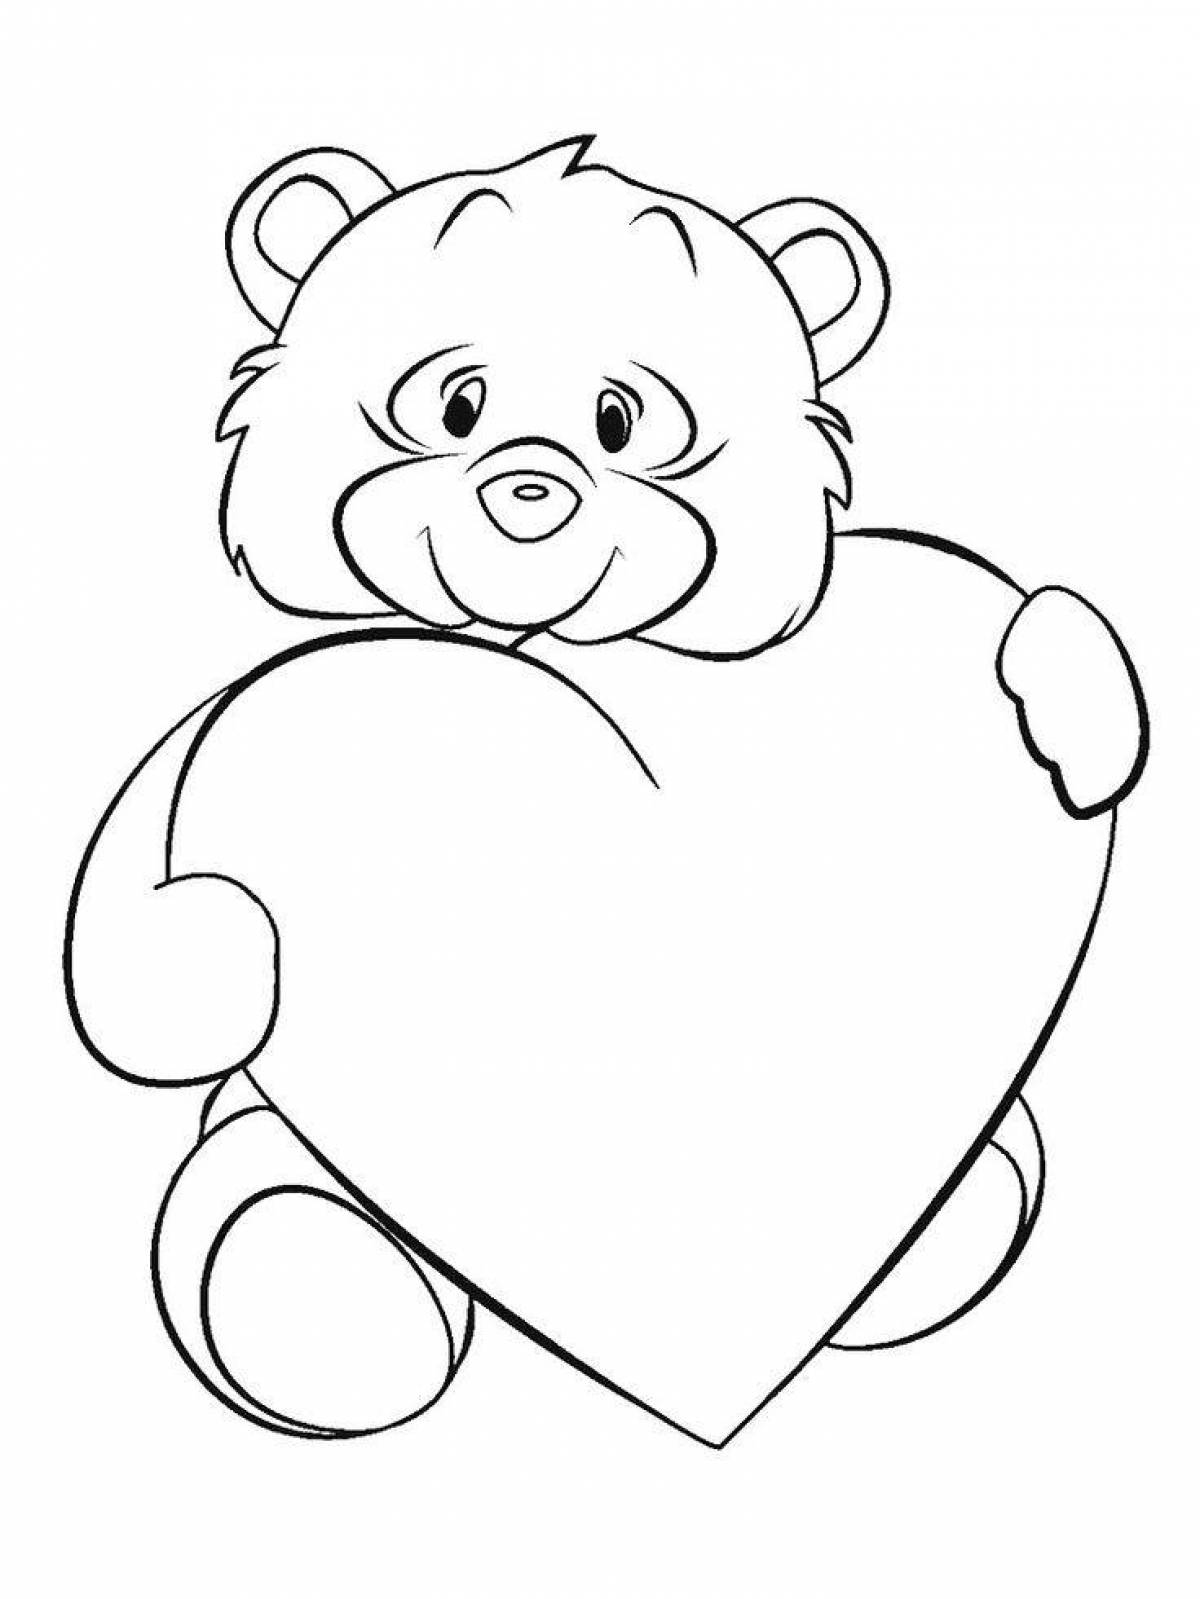 Teddy bear with a heart #1